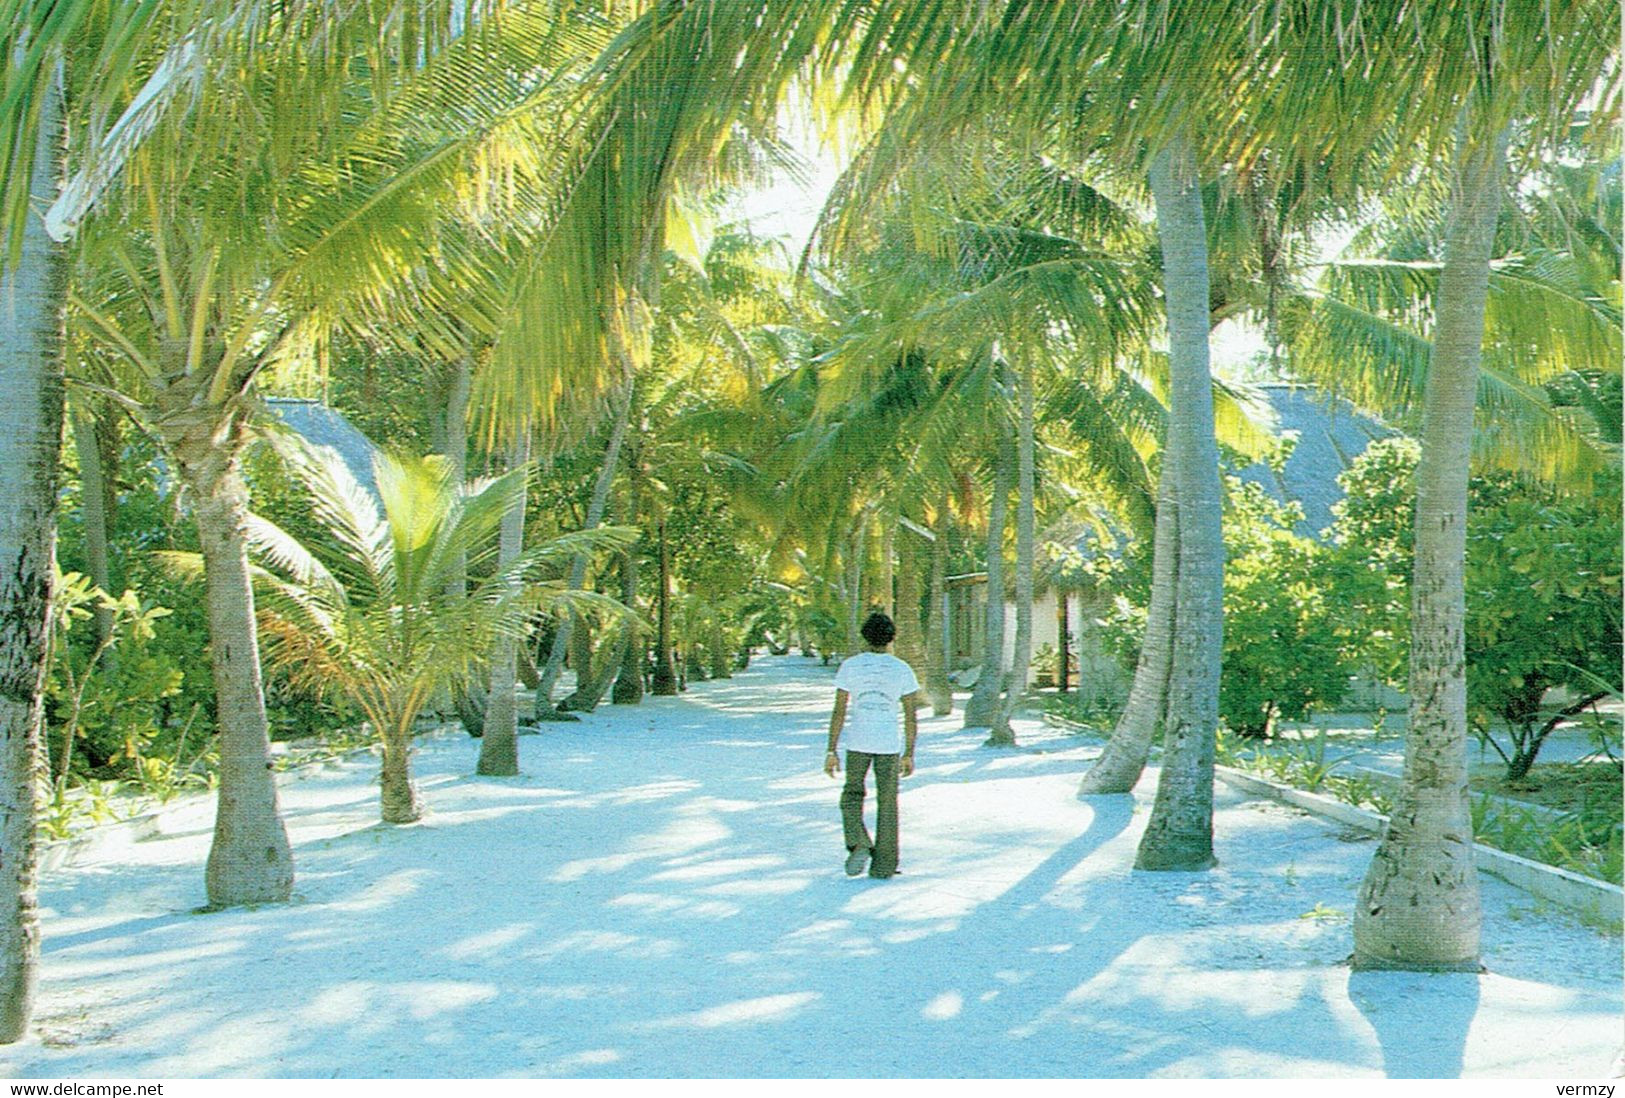 LANKAN FINOLU - A Visitors Dream - Maldive